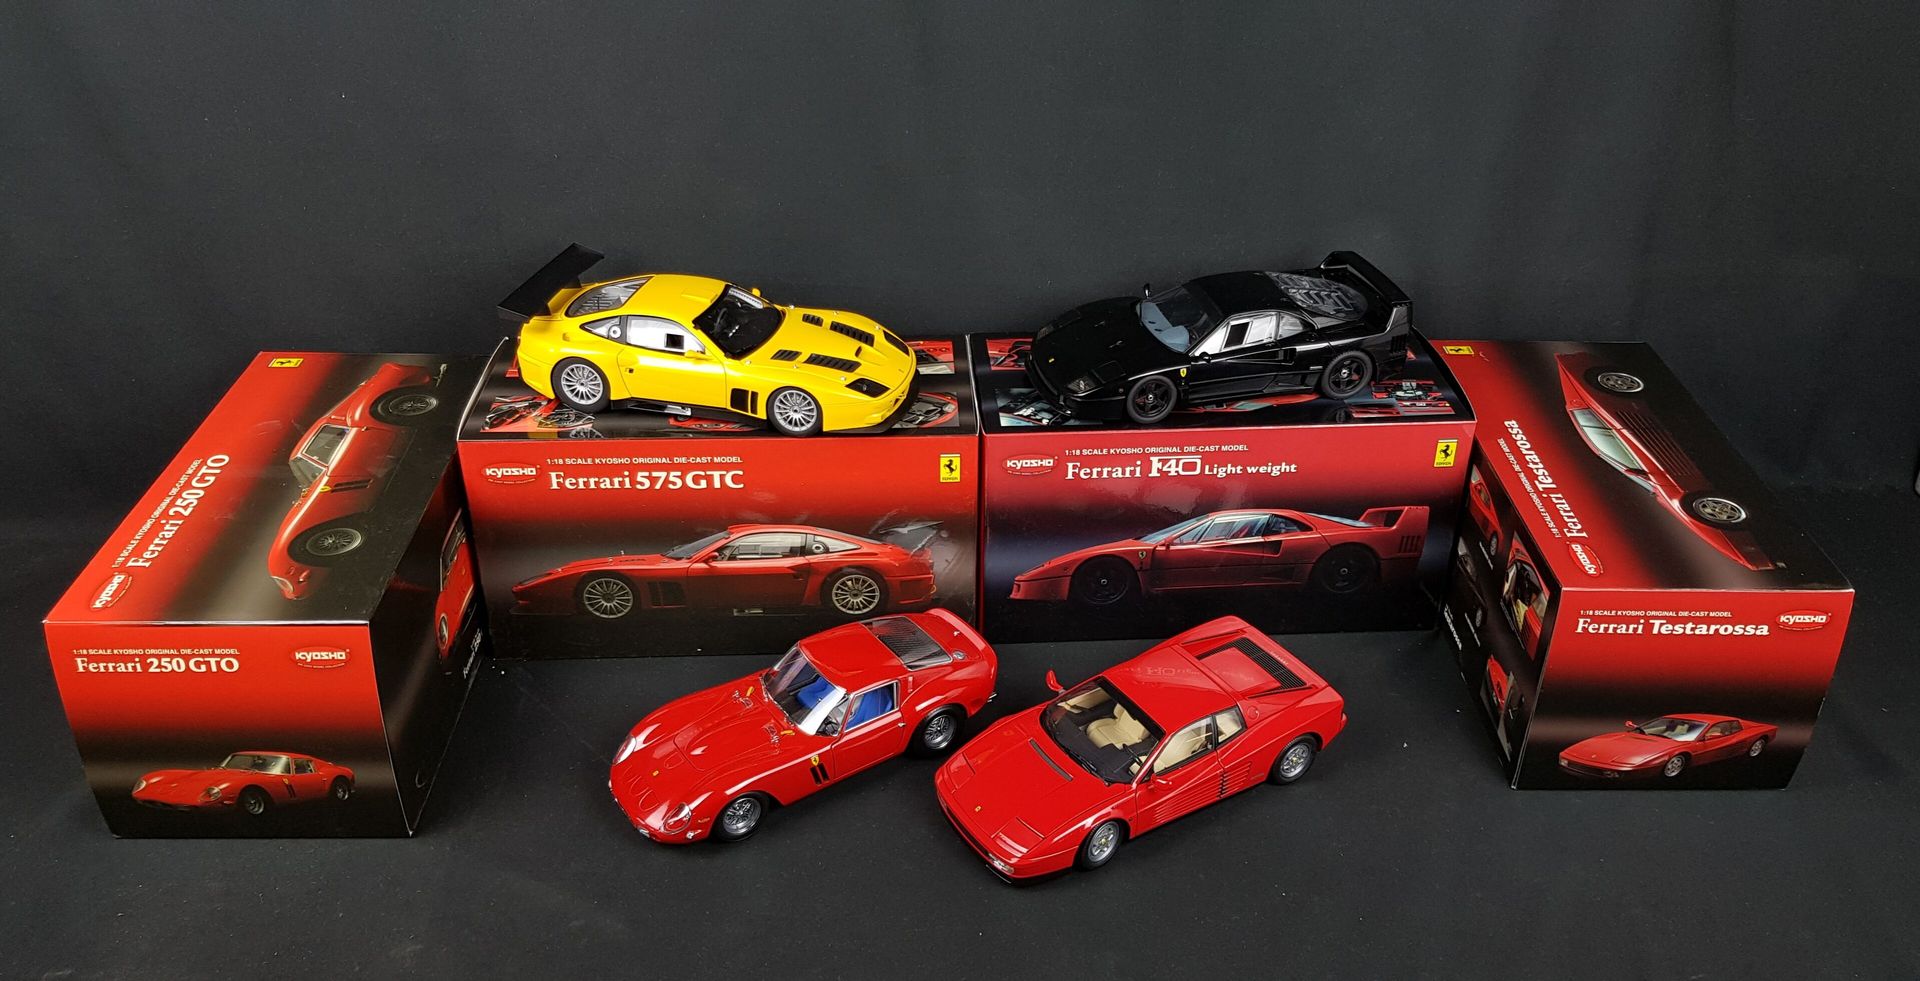 Null KYOSHO - FOUR Ferrari escala 1/18:

1x F40 Light White

1x 575 GTC

1x Test&hellip;